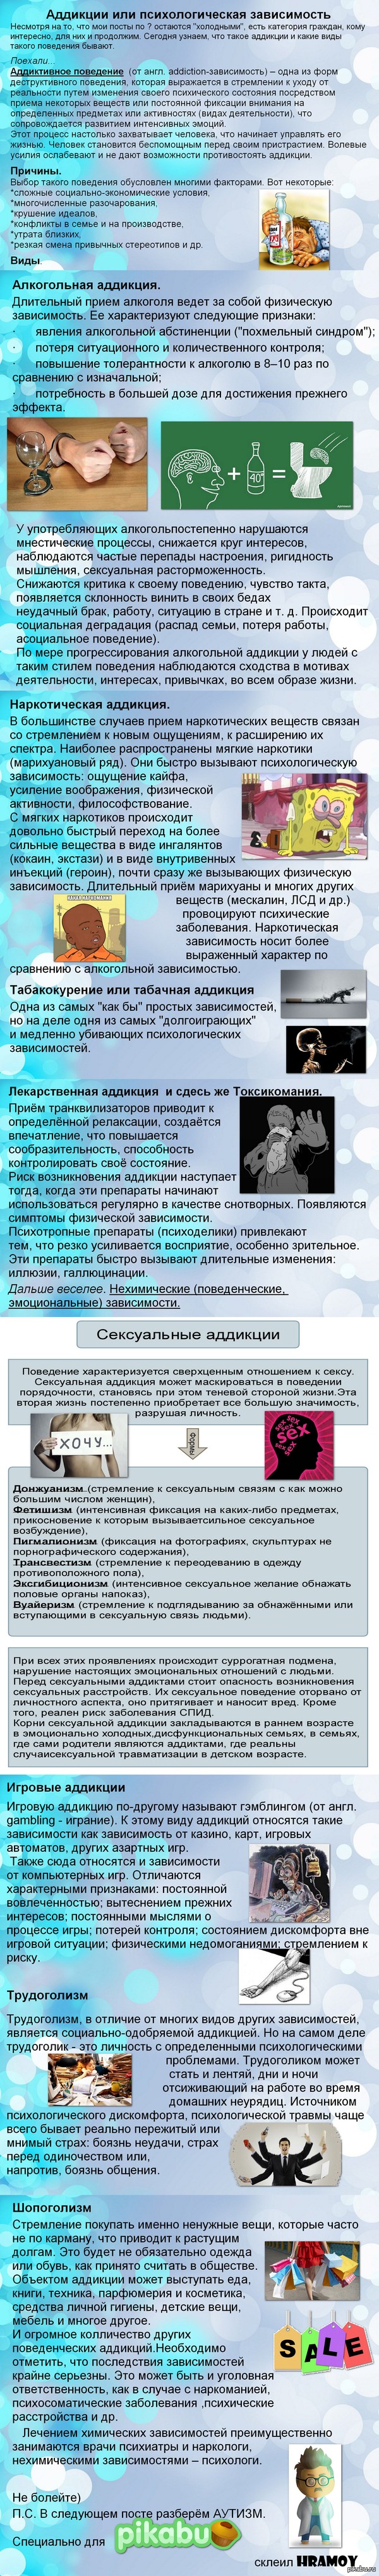    . 1.  <a href="http://pikabu.ru/story/_3192427">http://pikabu.ru/story/_3192427</a>  2.   <a href="http://pikabu.ru/story/dementsiya_ili_quotstarcheskiy_marazmquot_3204512">http://pikabu.ru/story/_3204512</a>